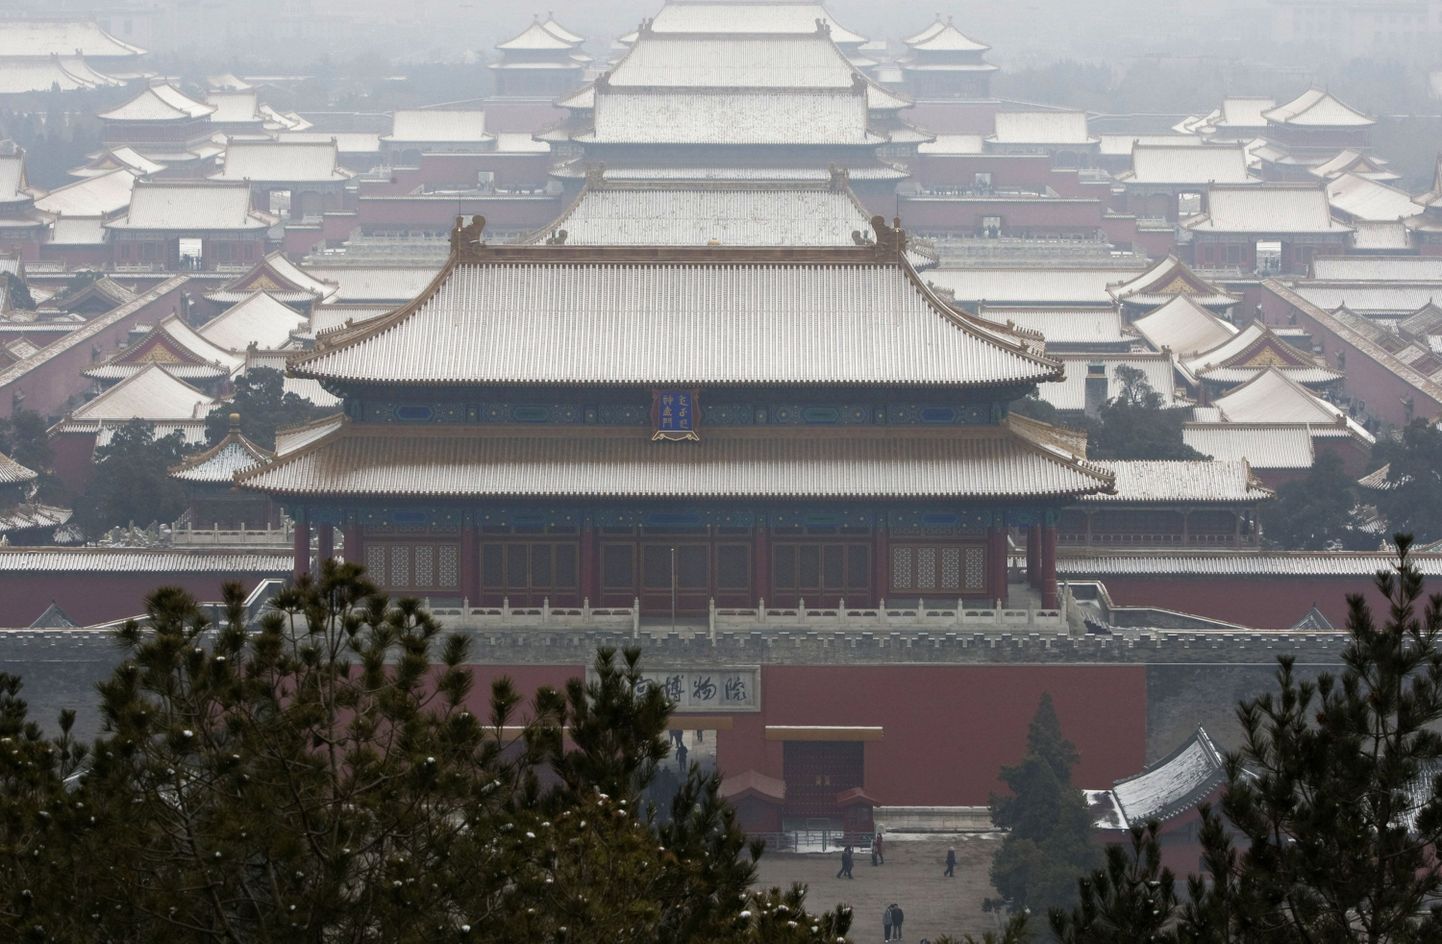 Pekingis asuv Keelatud linn, kus kunagi elasid Hiina keisrid